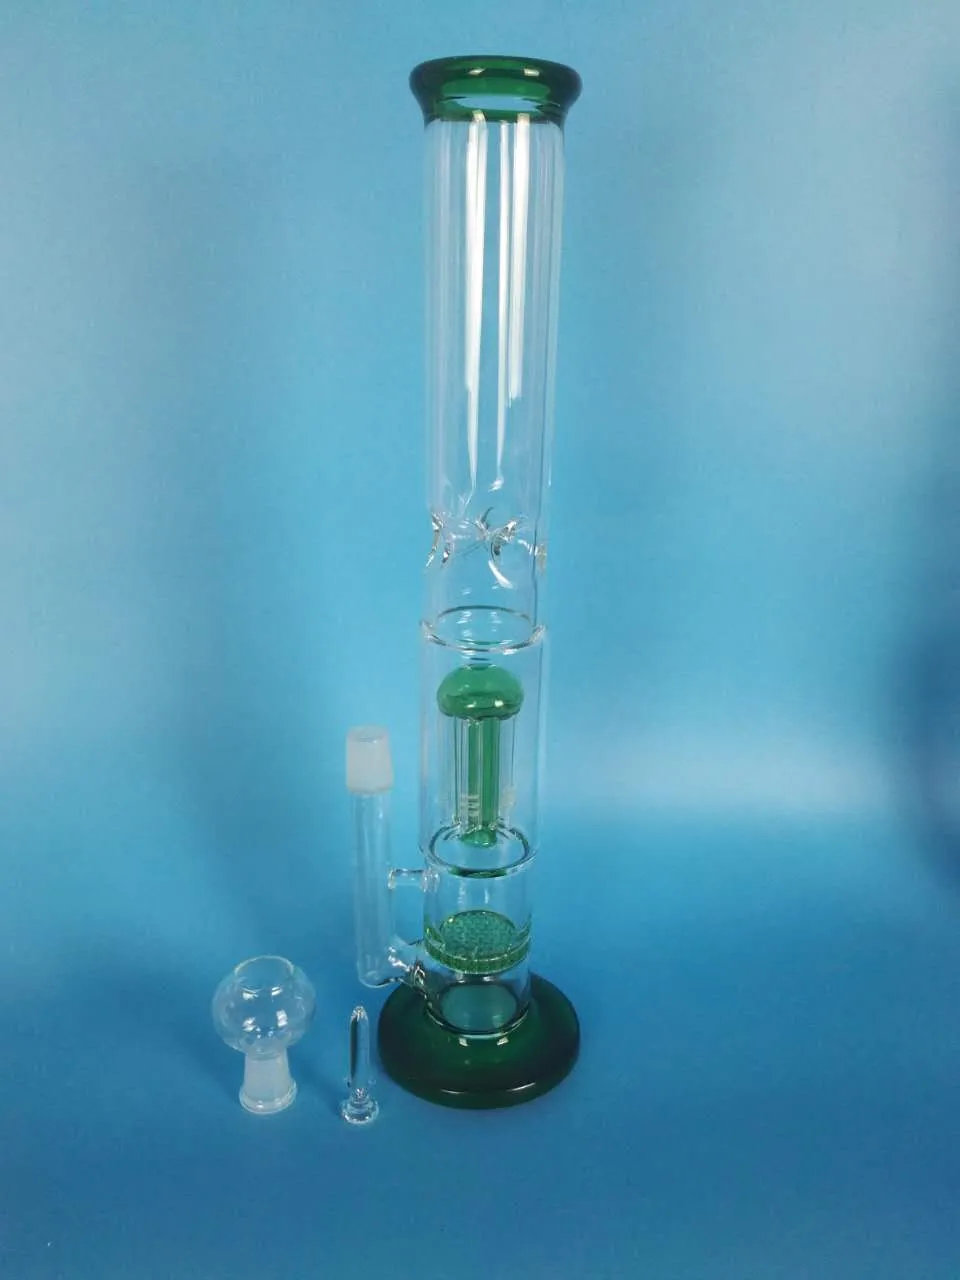 O envio gratuito de vidro garfo de vidro de vidro de filtro de favo de mel da marca de qualidade da tubulação de água, h: 38 cm d: 5cn /4.5 cm. Verde